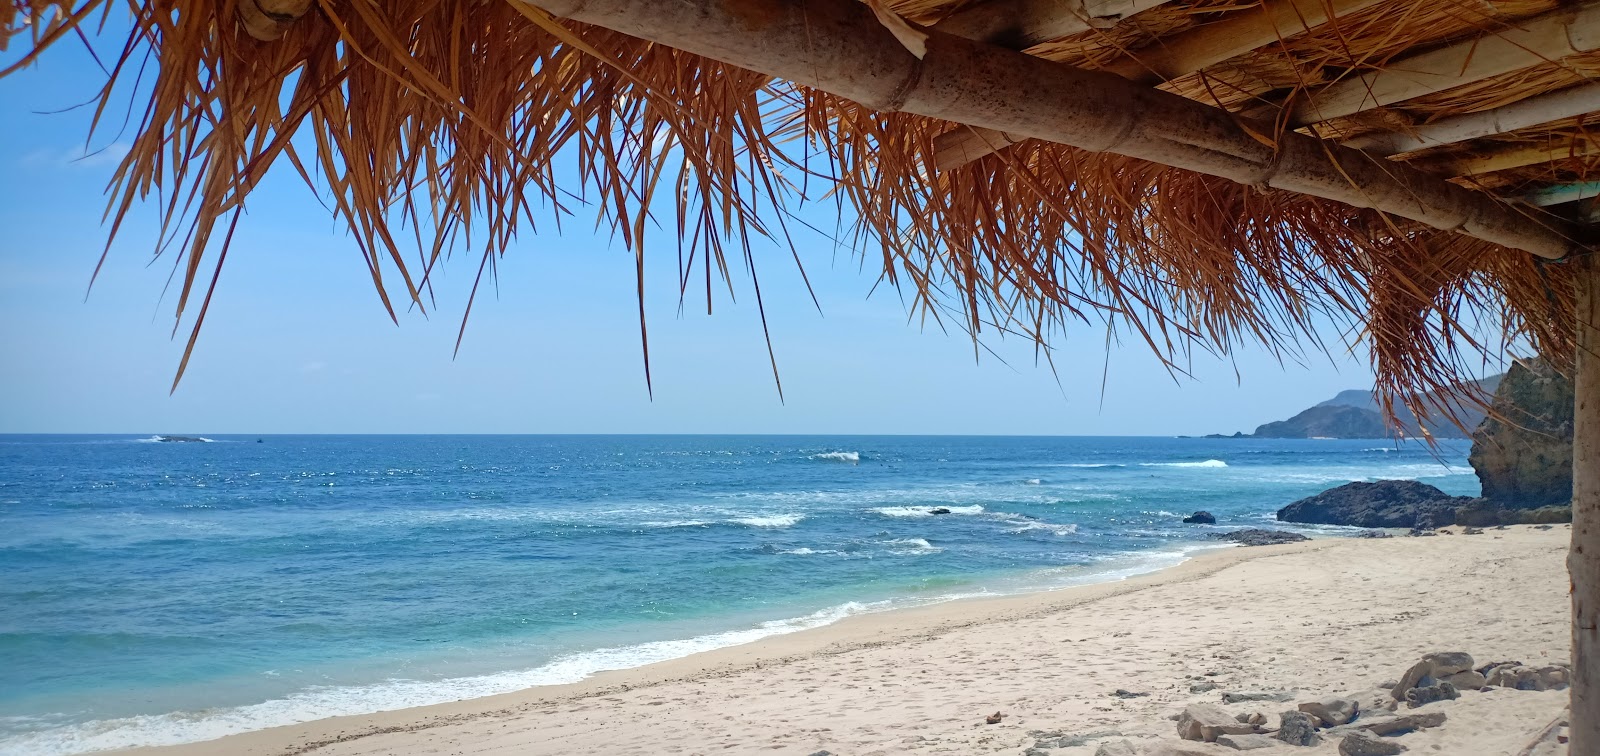 Photo de Mandalika Queen Beach - endroit populaire parmi les connaisseurs de la détente